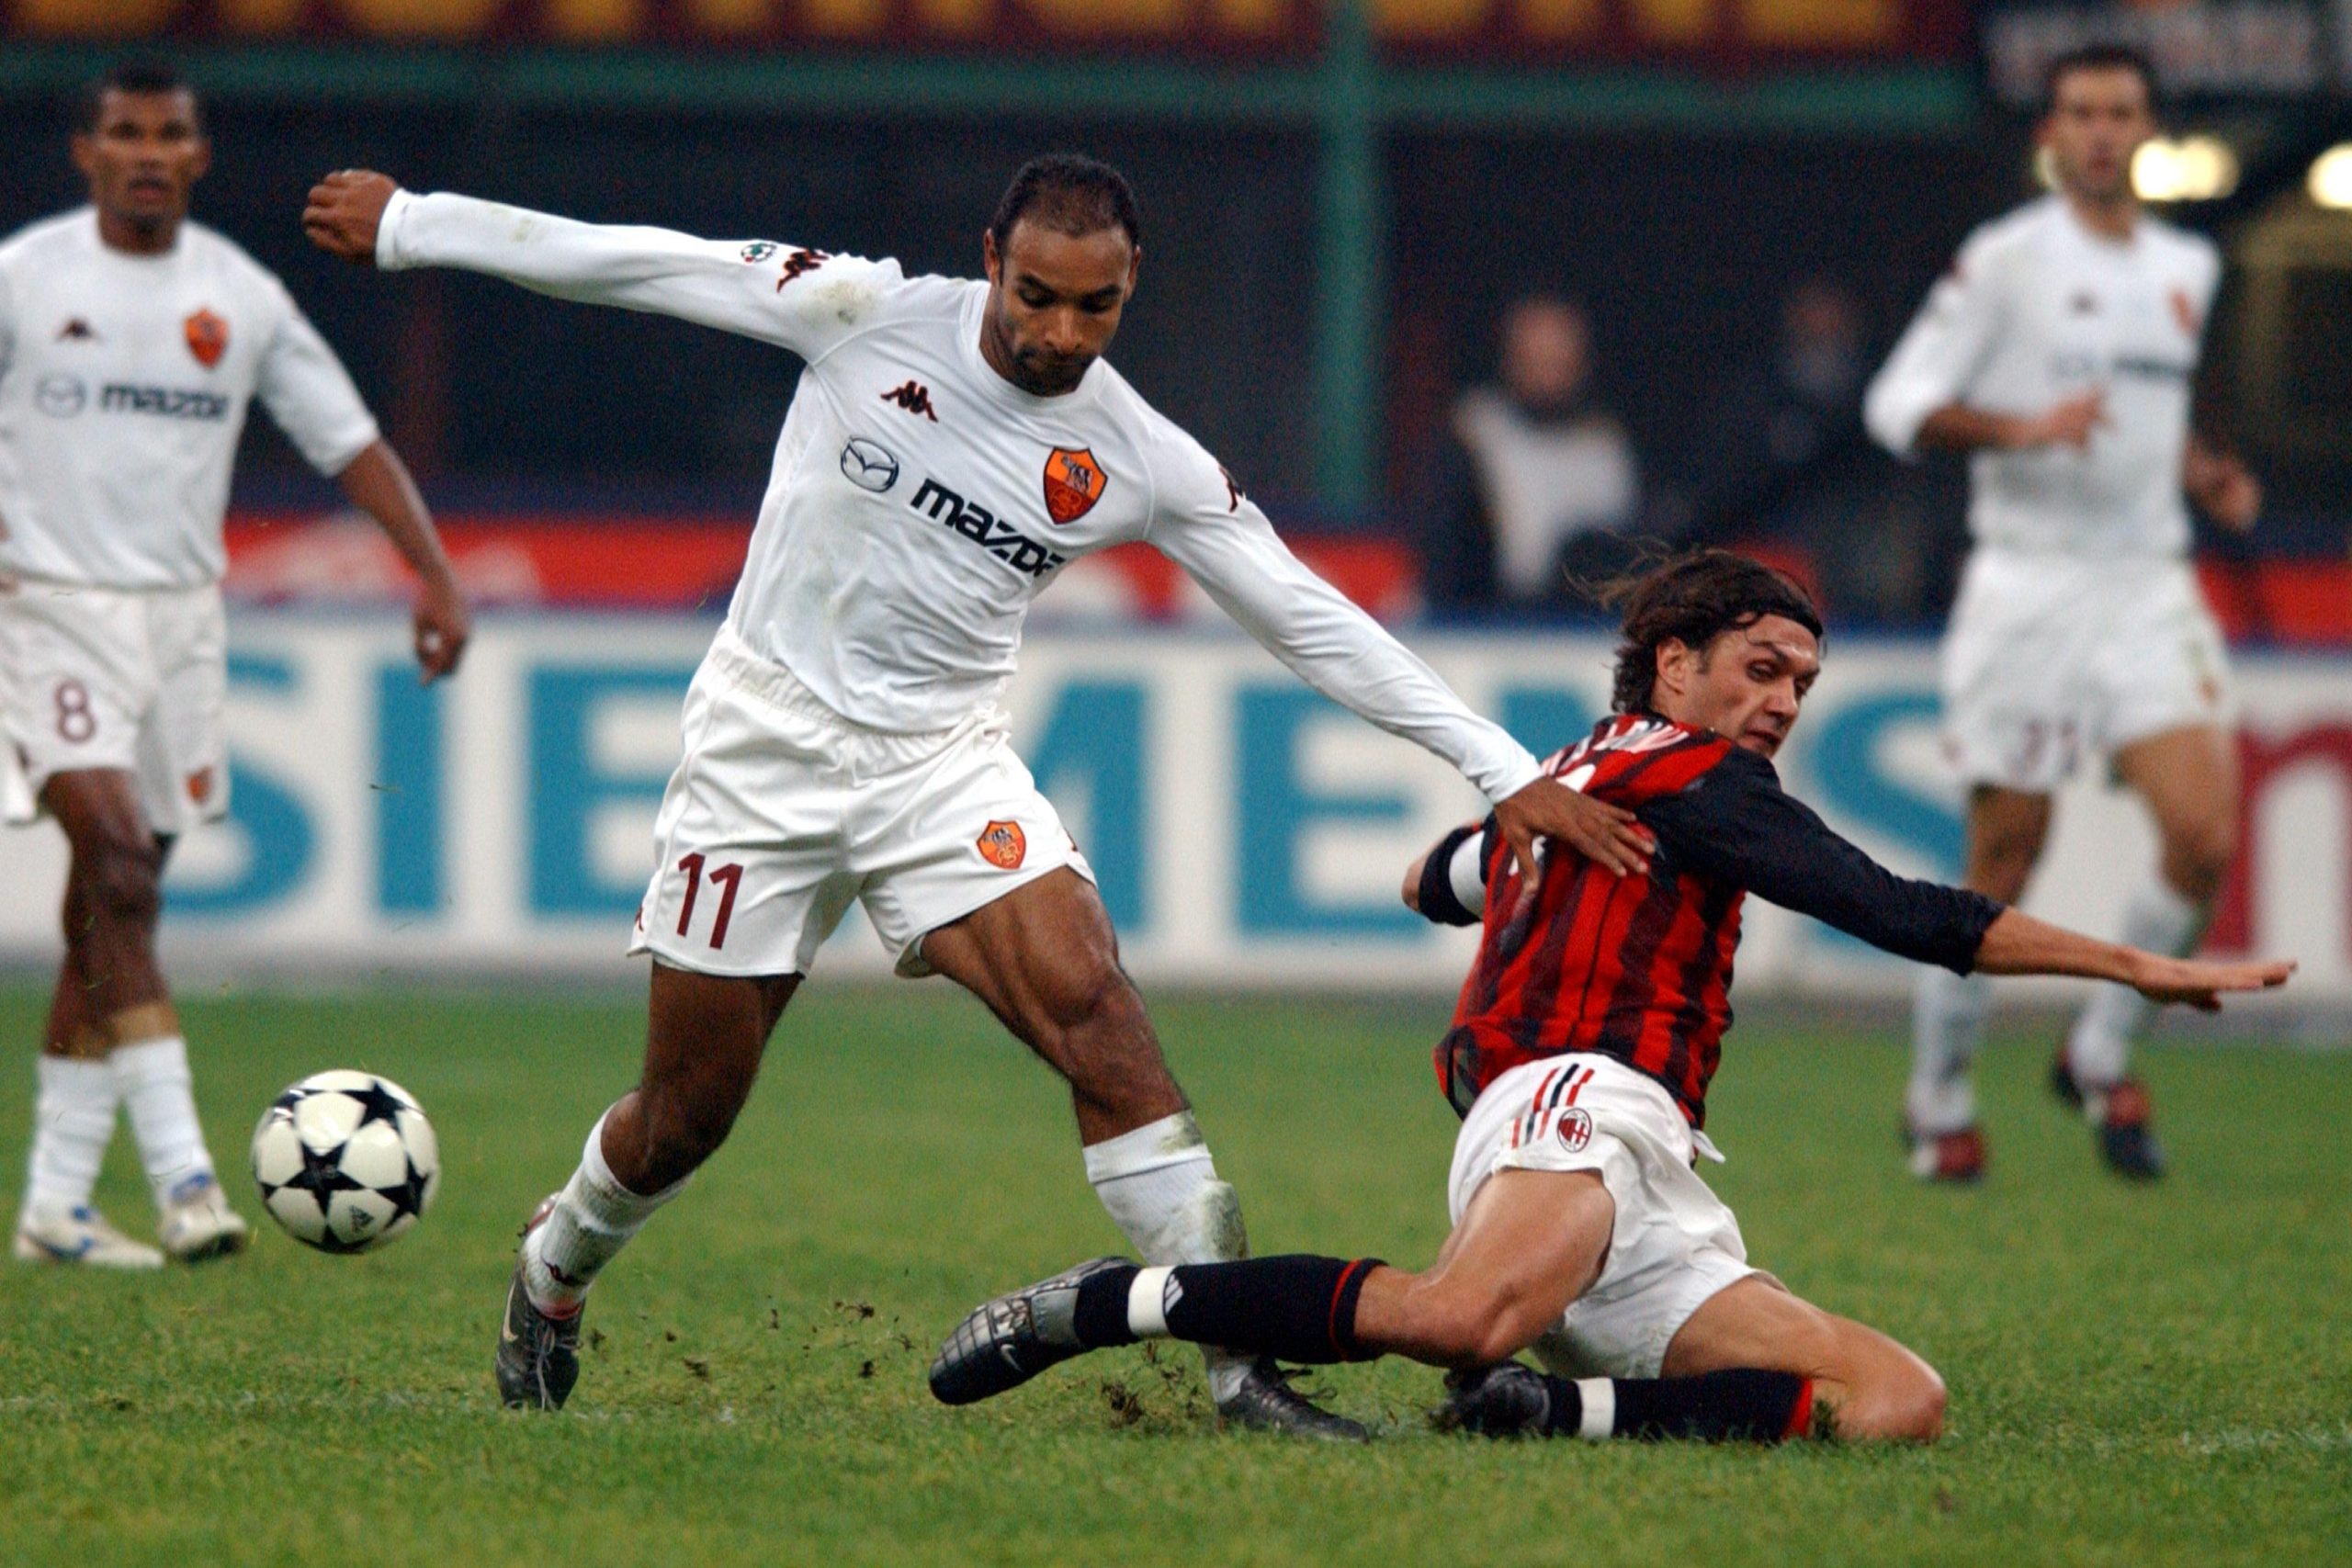 Paolo-Maldini-tackle-scaled